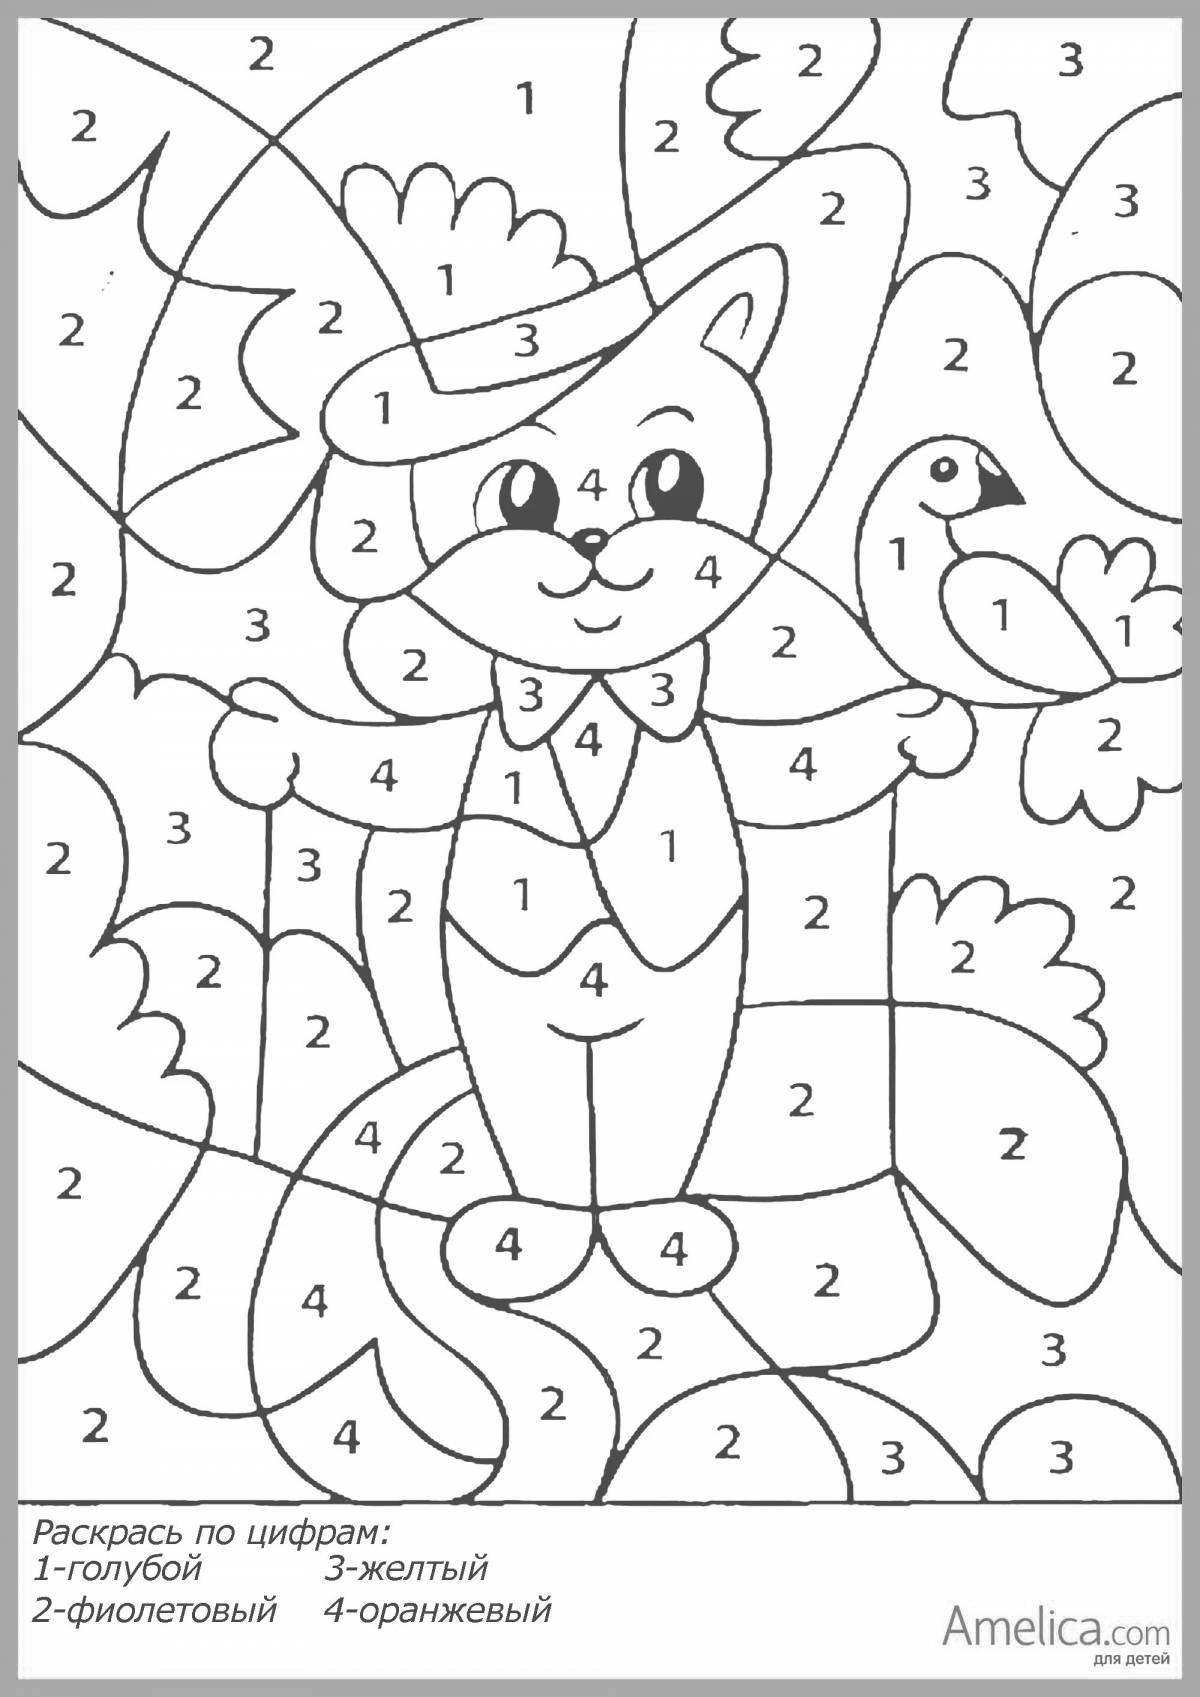 Color-happy coloring page digital для детей 6-7 лет